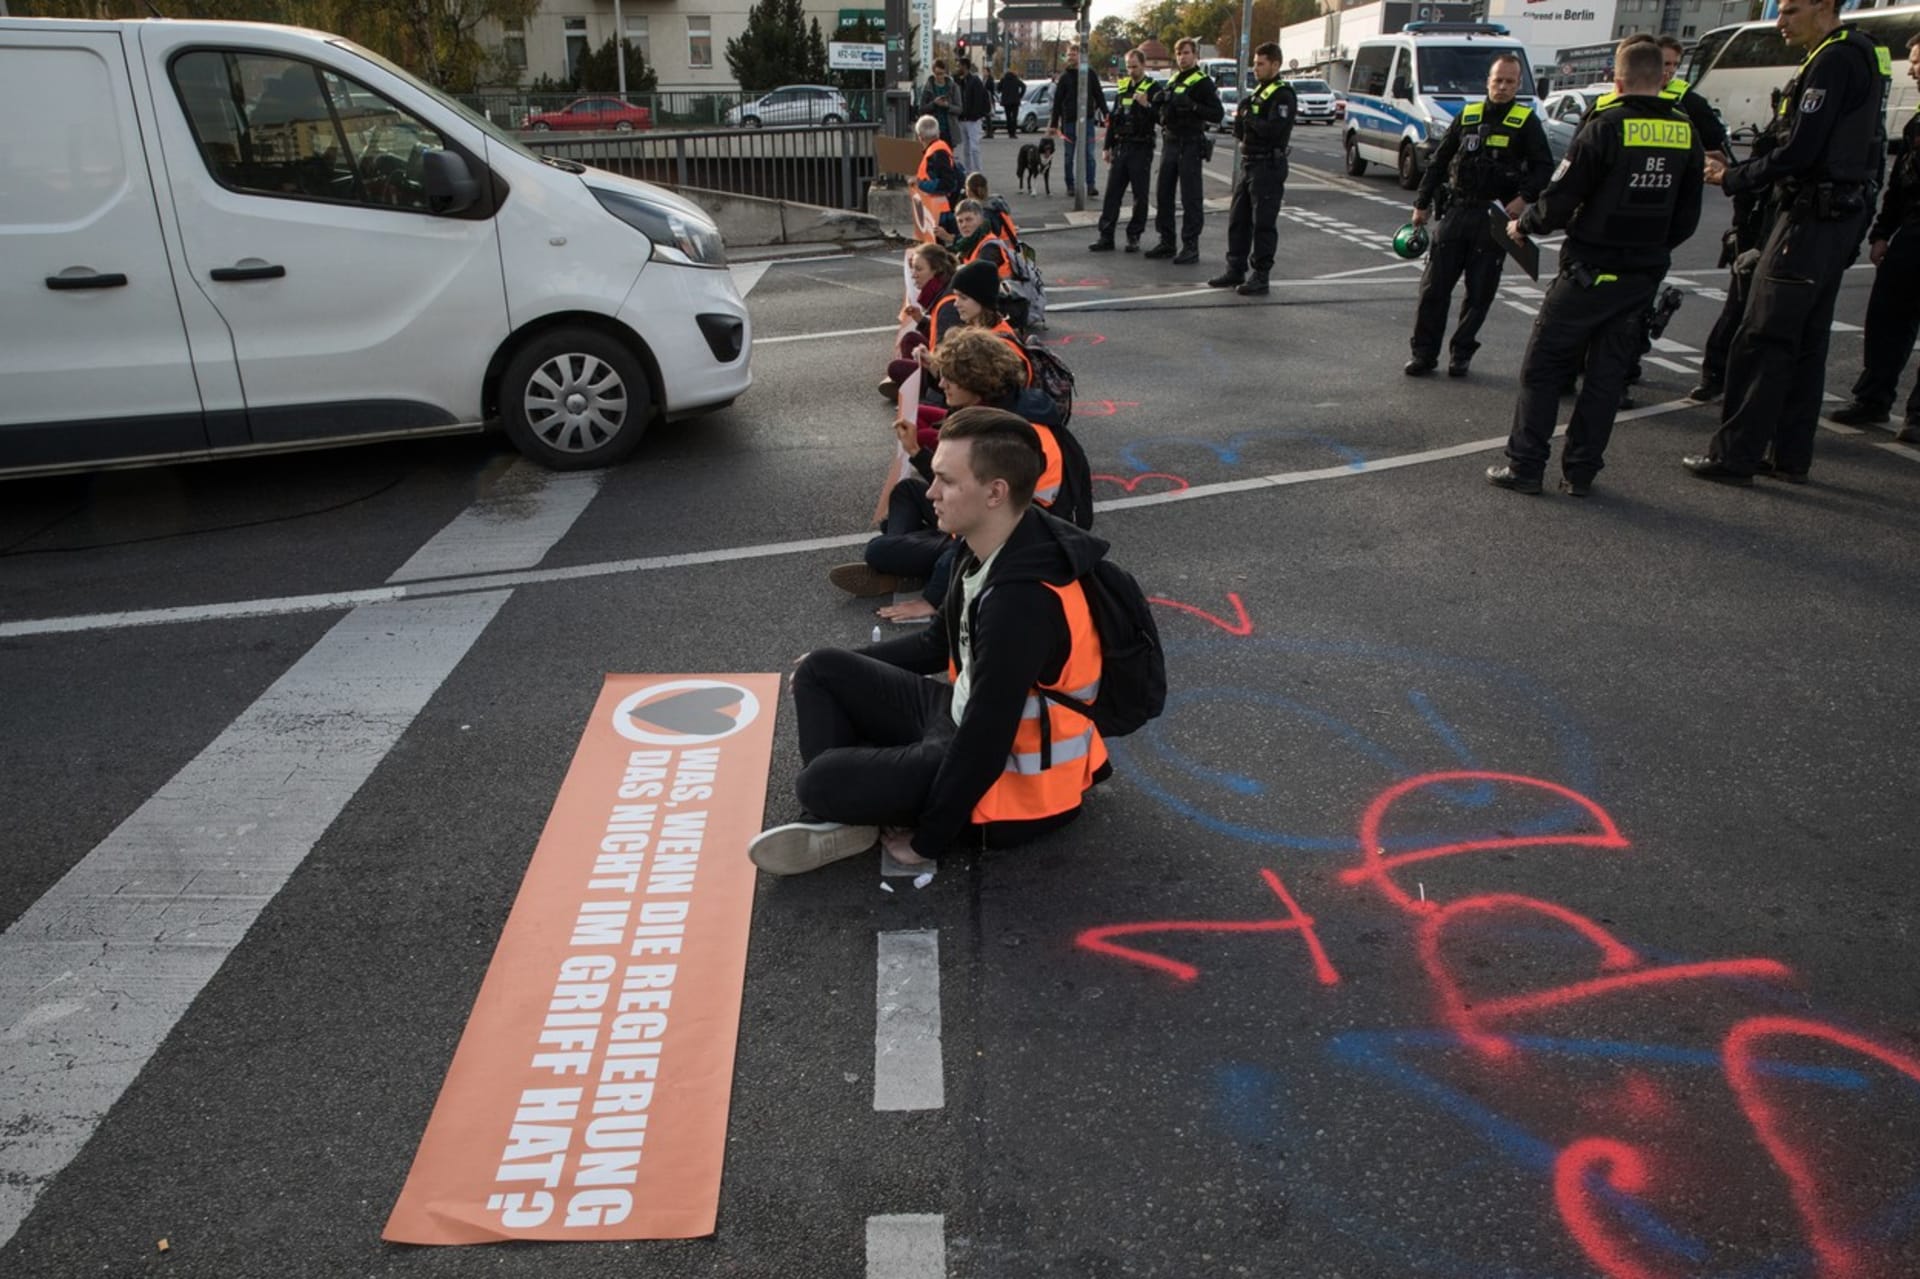 Klimatičtí aktivisté z hnutí Letzte Generation blokovali dopravu v centru Berlína.